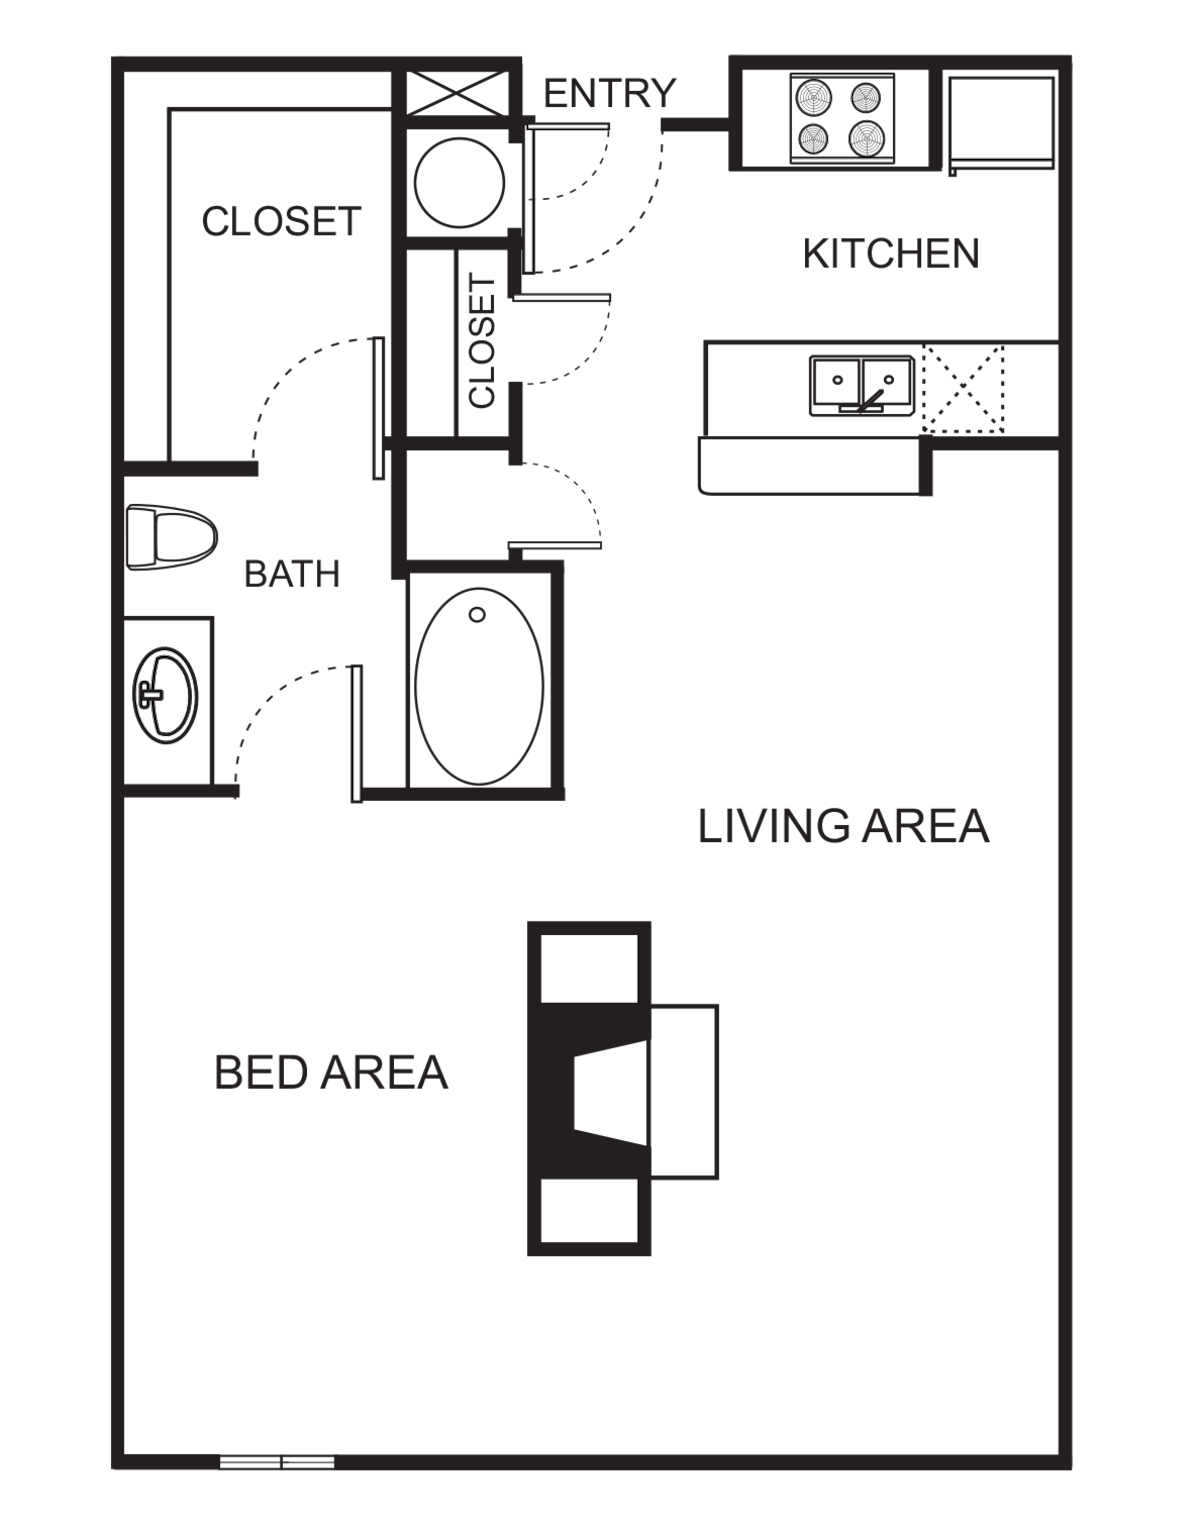 Floorplan diagram for S8 Studio - Harmony, showing Studio